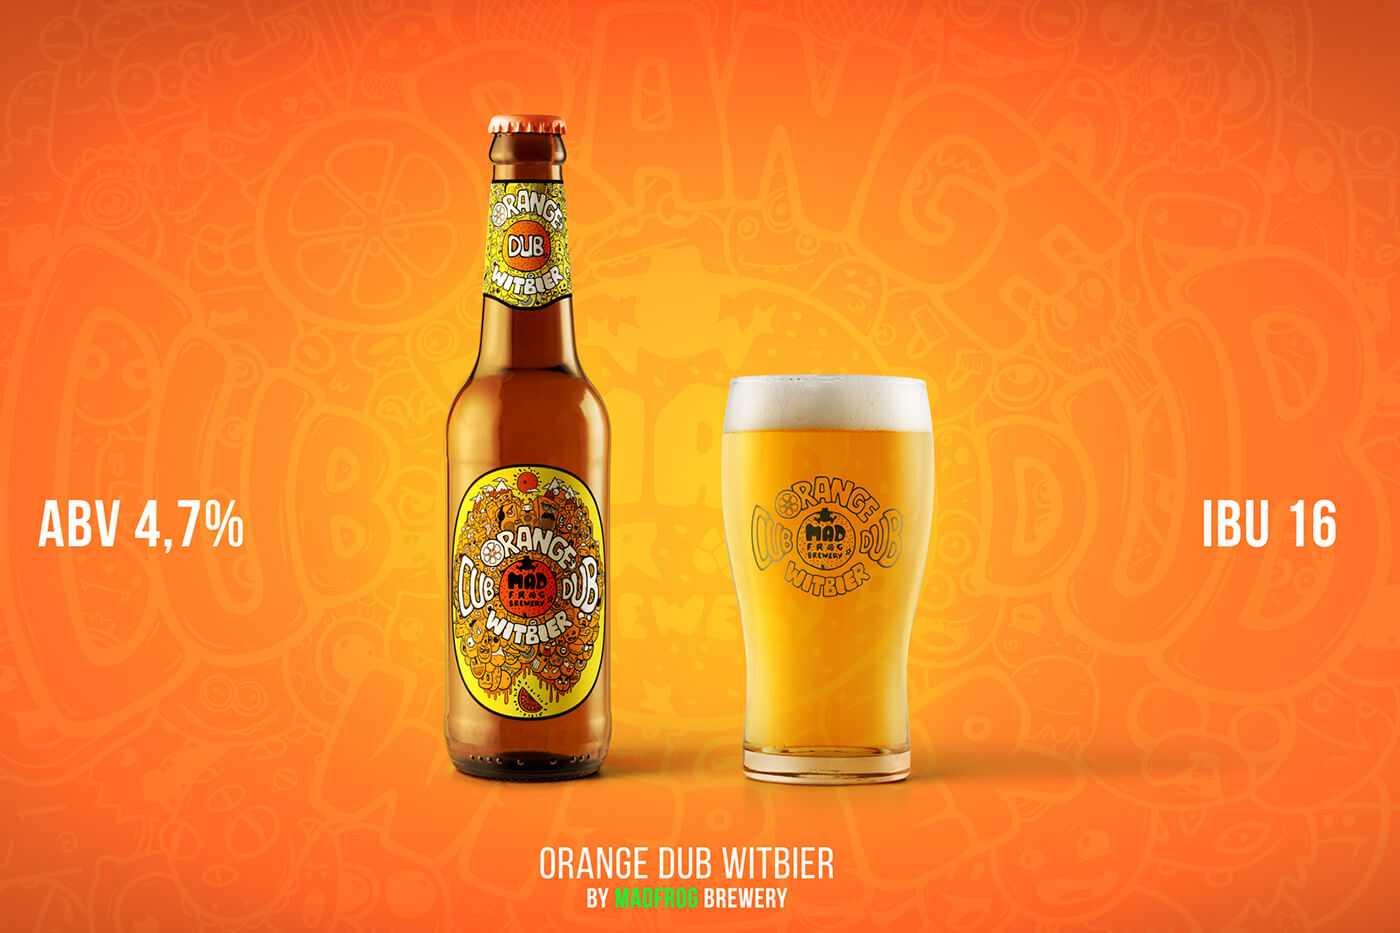 Witbier пиво. Белорусское пиво. Бельгийское пшеничное пиво. Реклама Белоруссии с пивом.